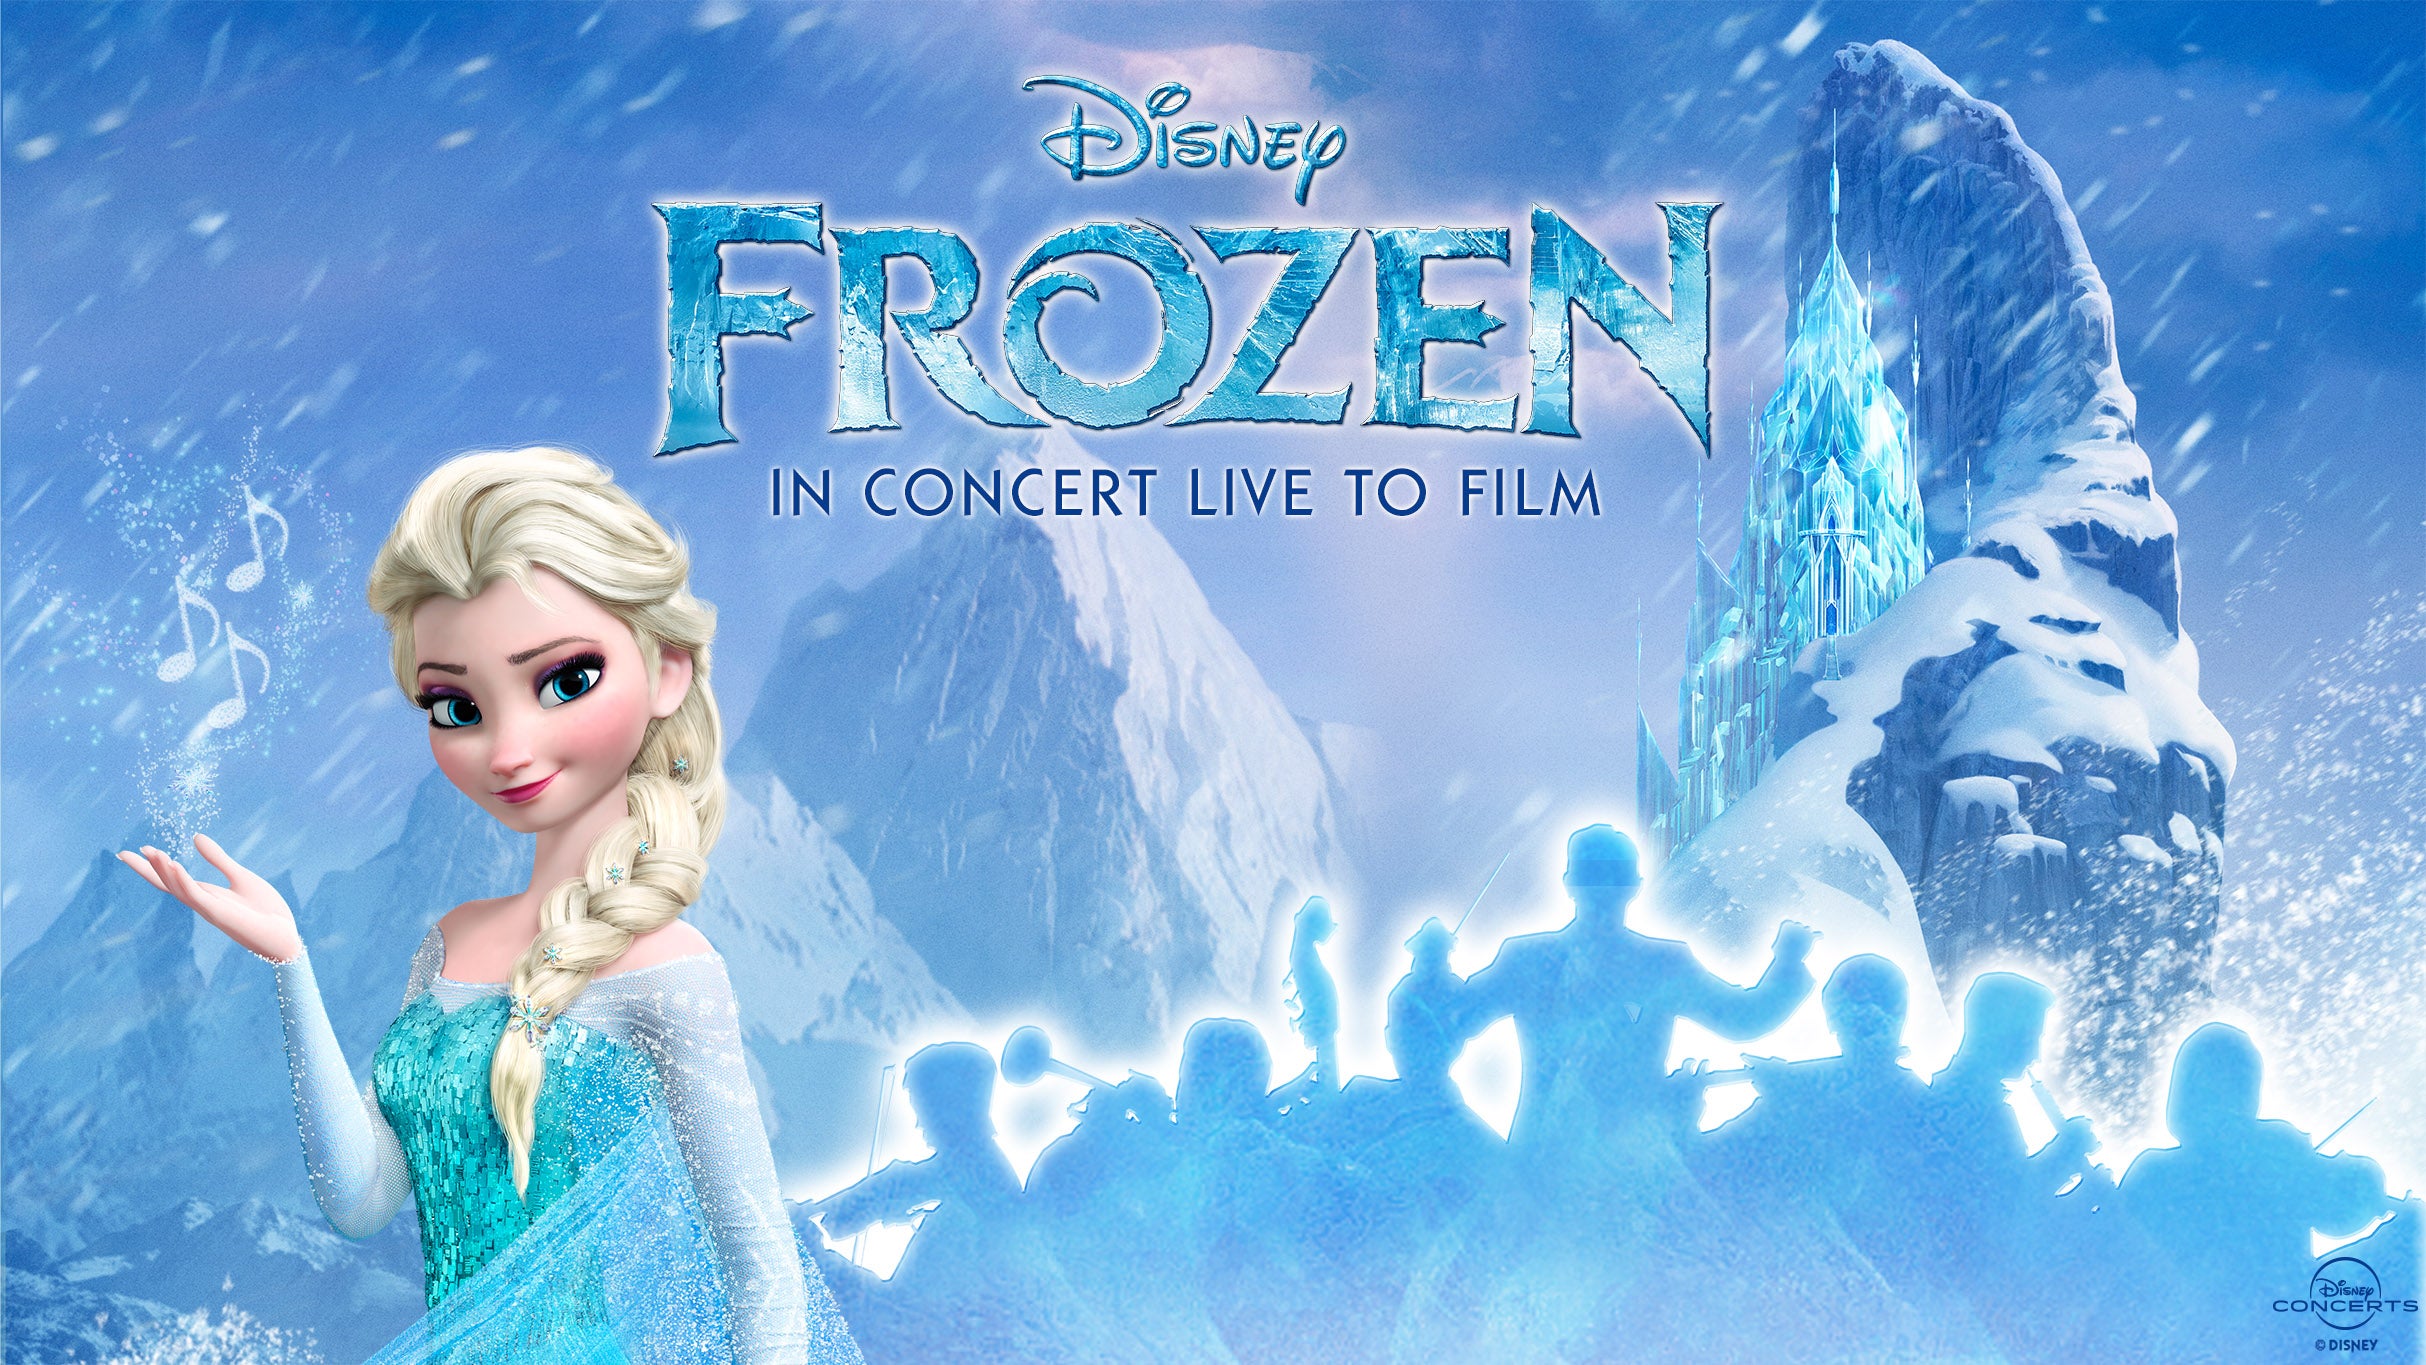 Frozen in Concert Live to Film